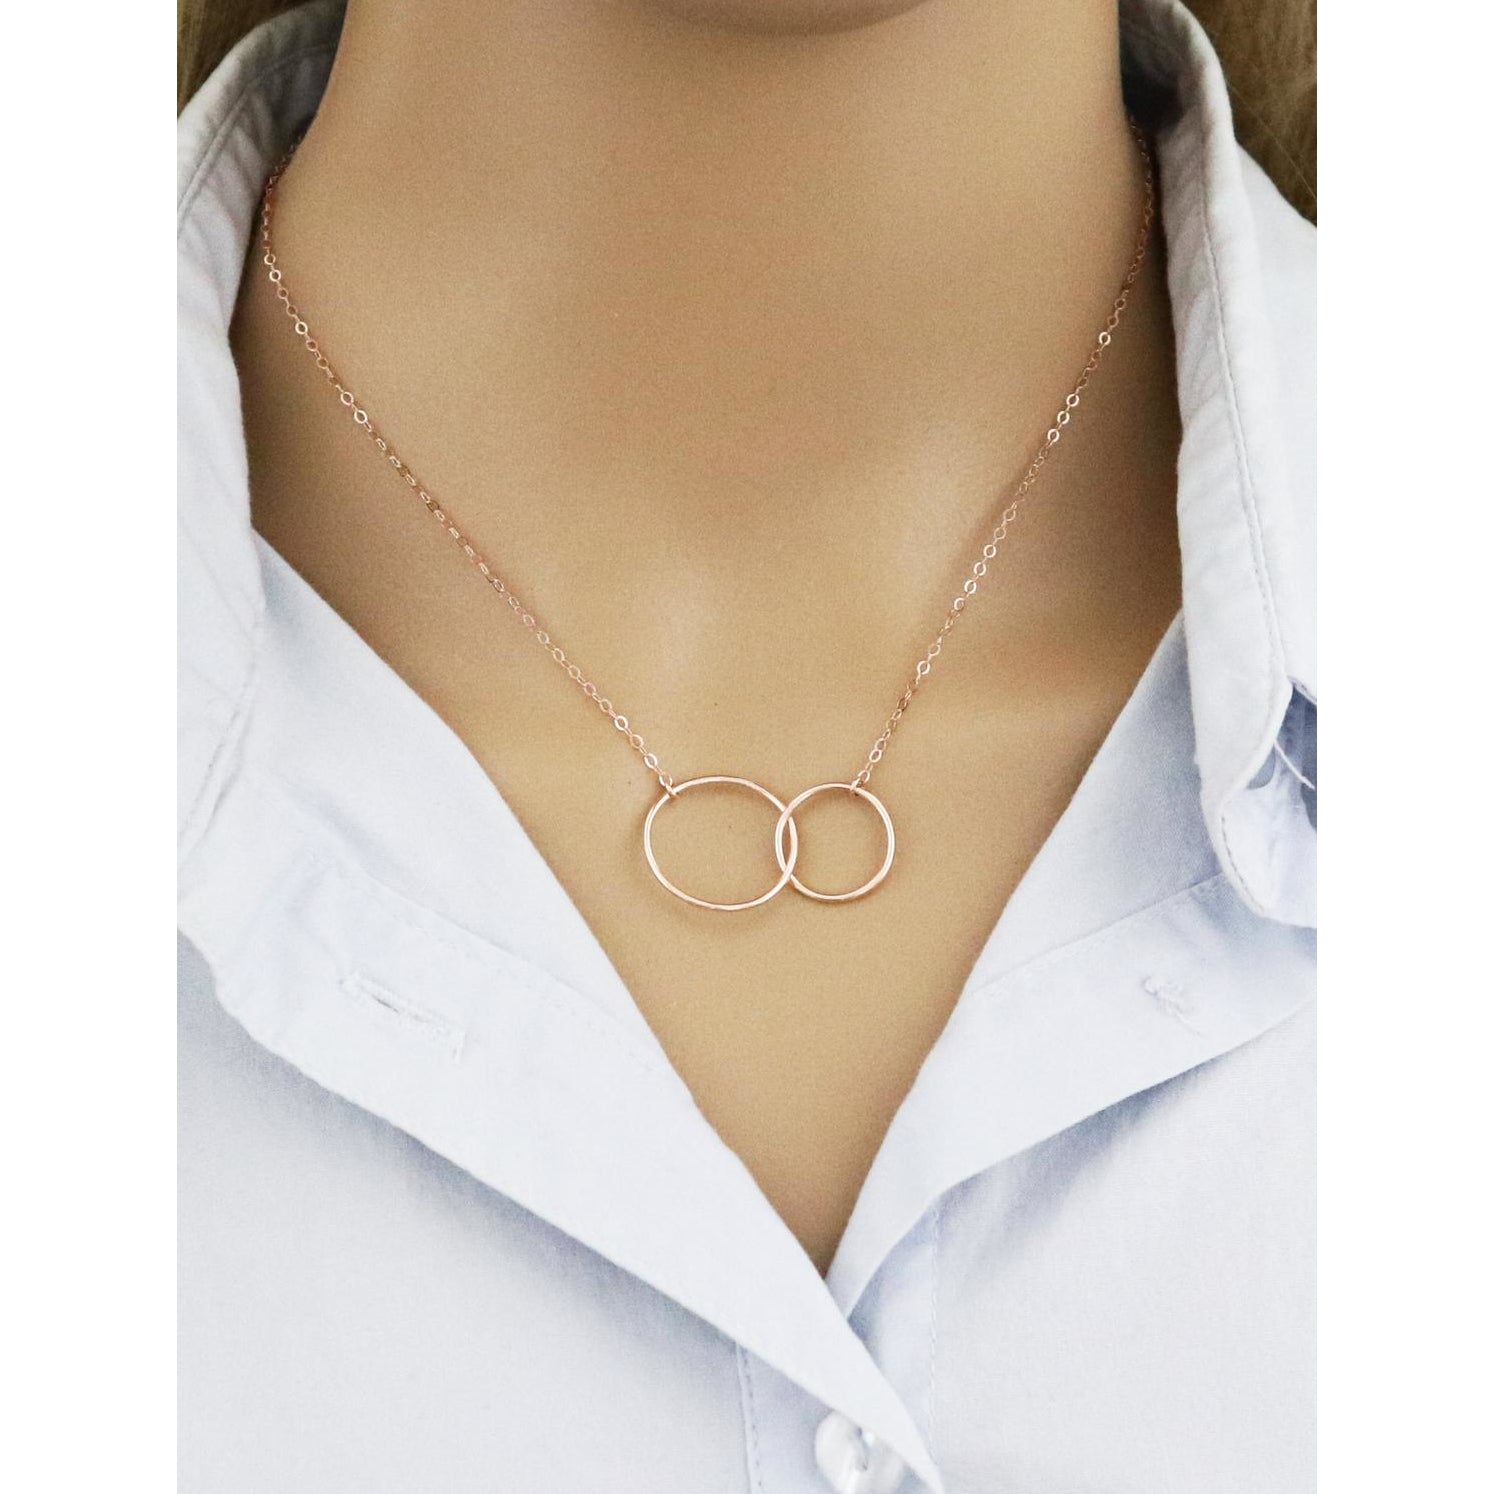 Long Concentric Circle Pendant Necklace | Pendant necklaces | Accessorize  ROI